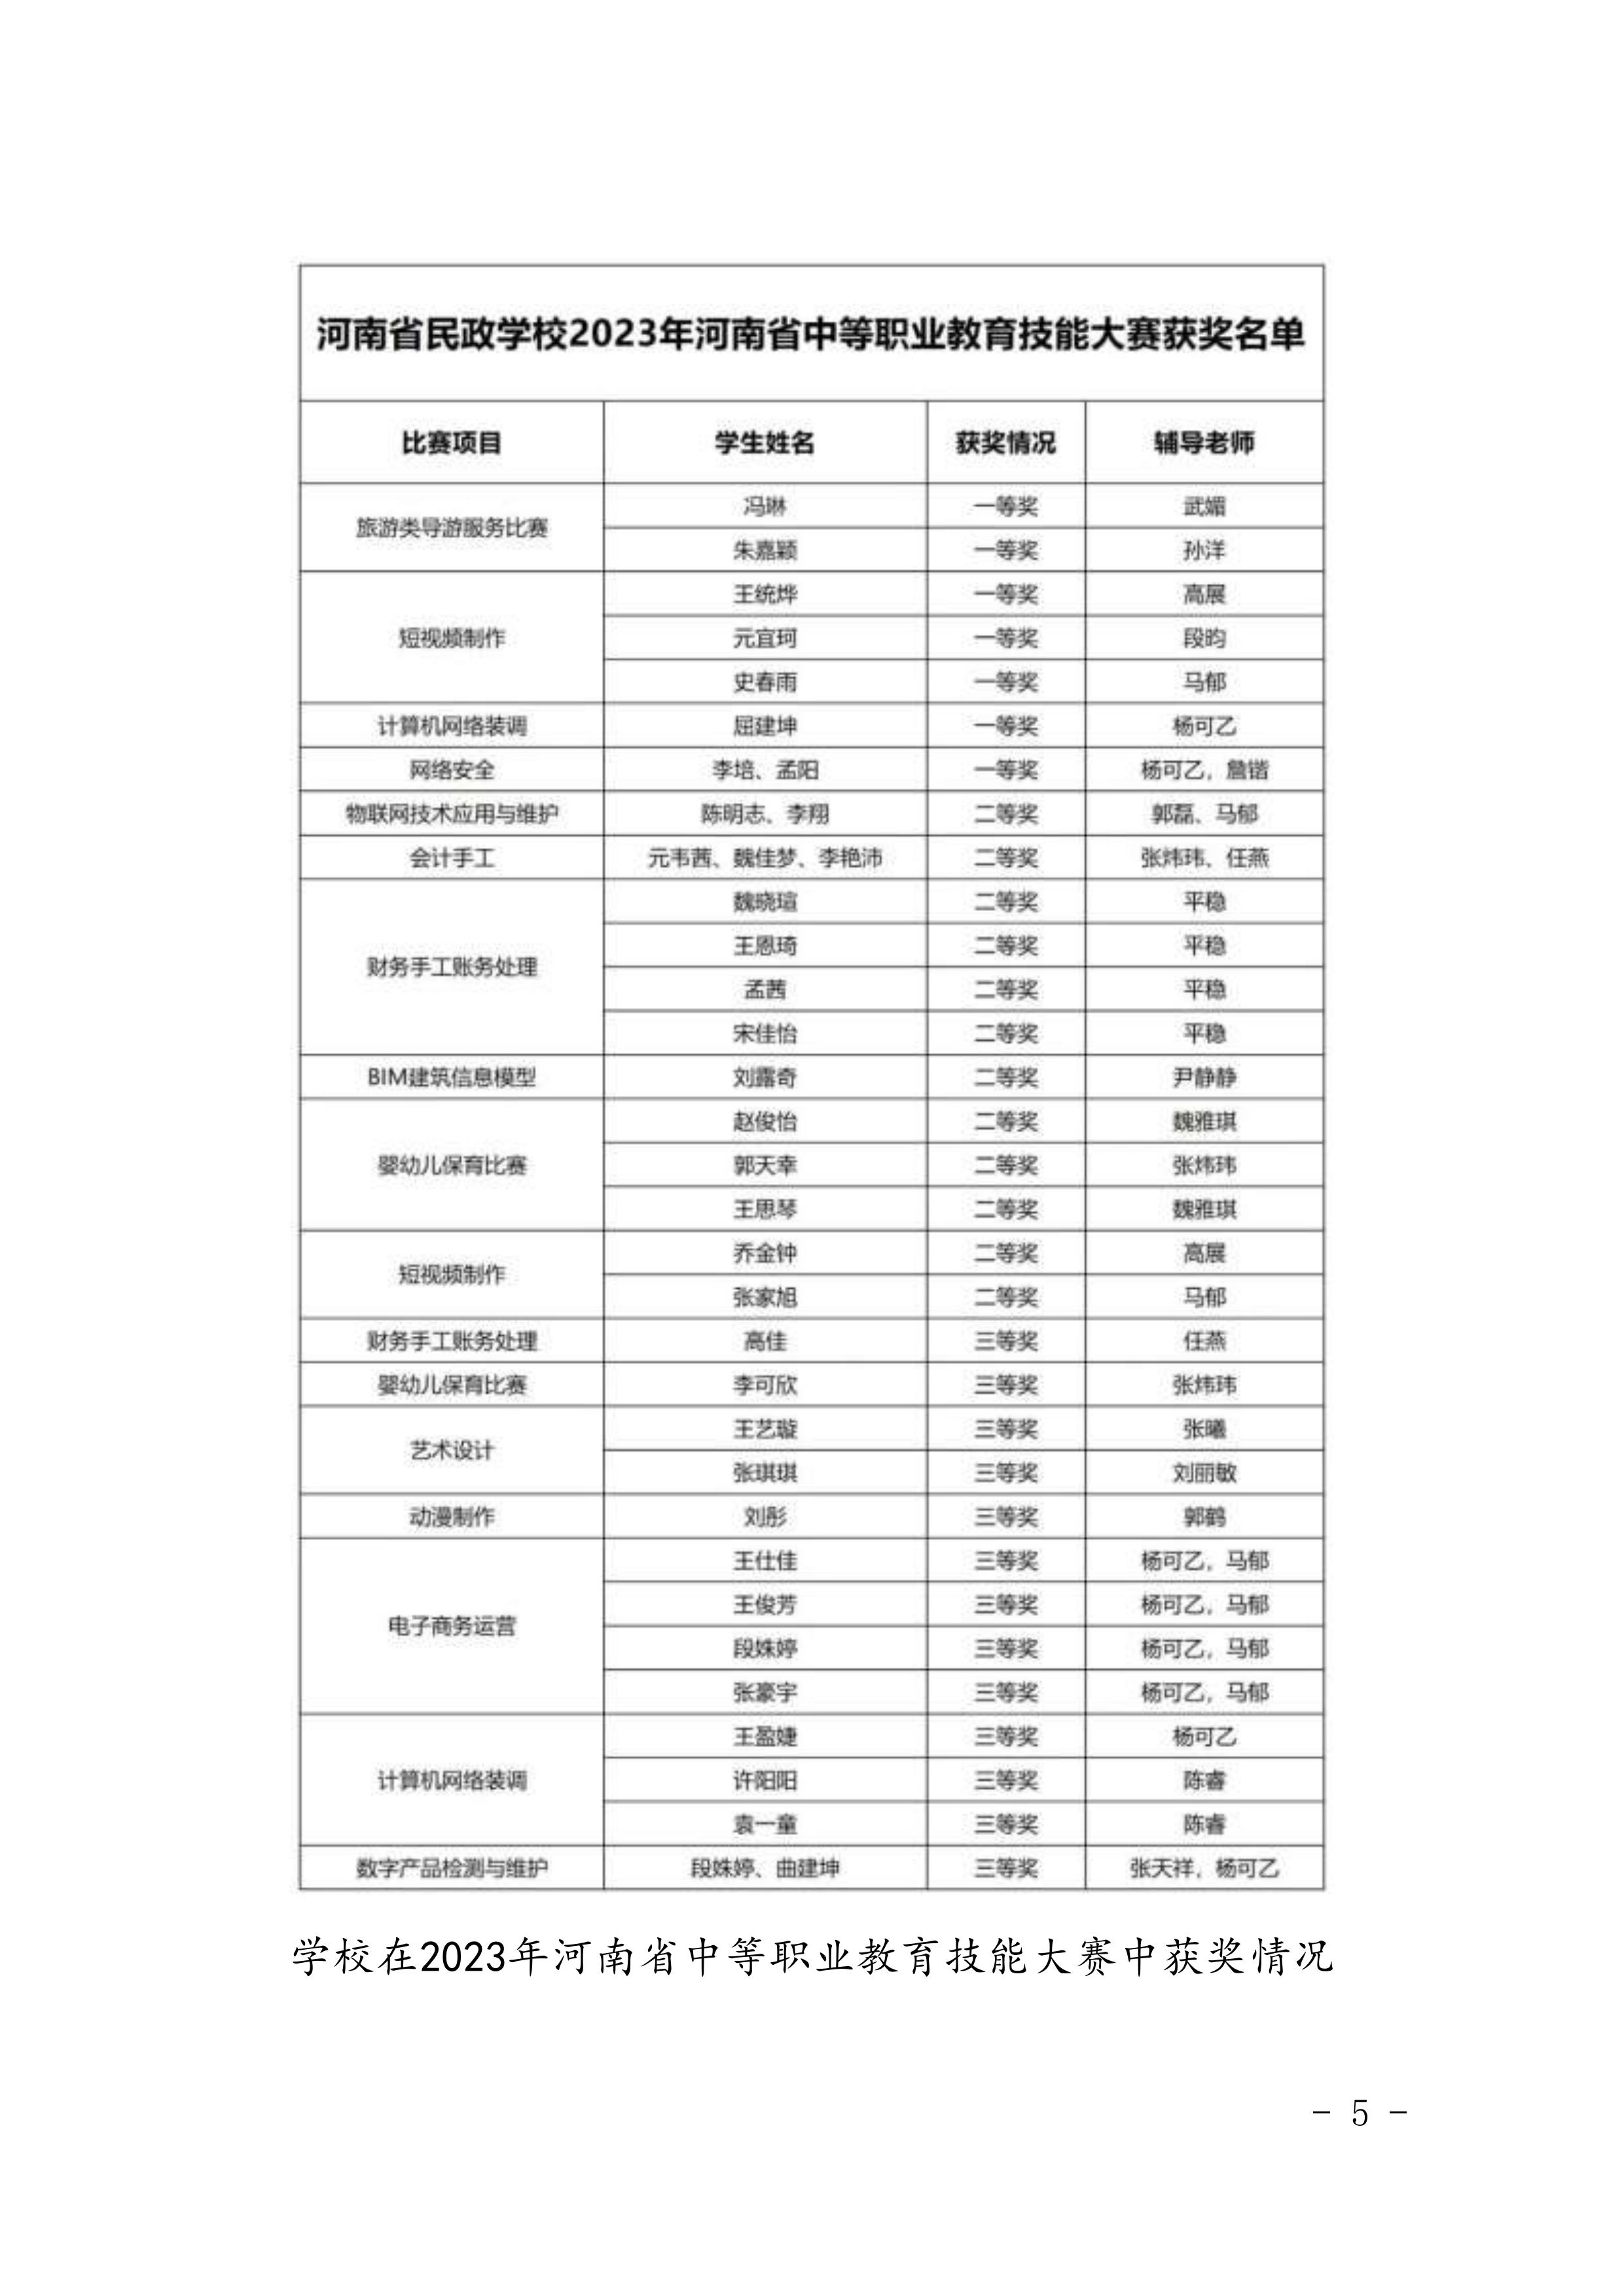 河南省民政学校职业教育质量报告（2023年度）发布版_08.jpg